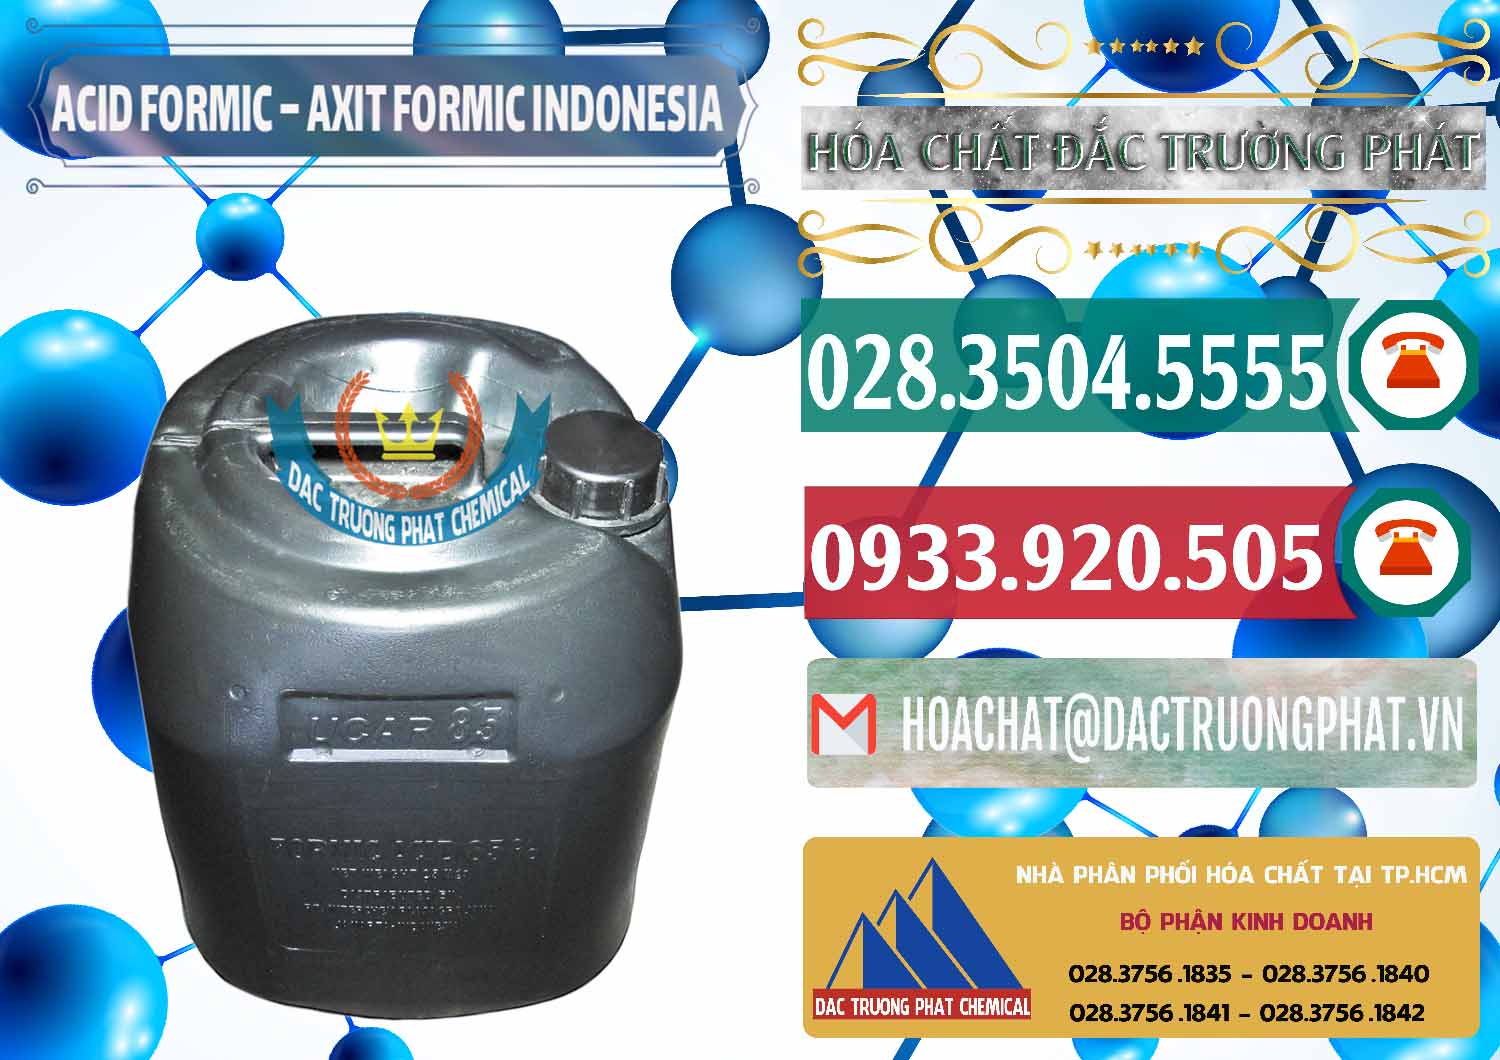 Công ty chuyên kinh doanh - bán Acid Formic - Axit Formic Indonesia - 0026 - Nơi cung cấp & phân phối hóa chất tại TP.HCM - muabanhoachat.vn